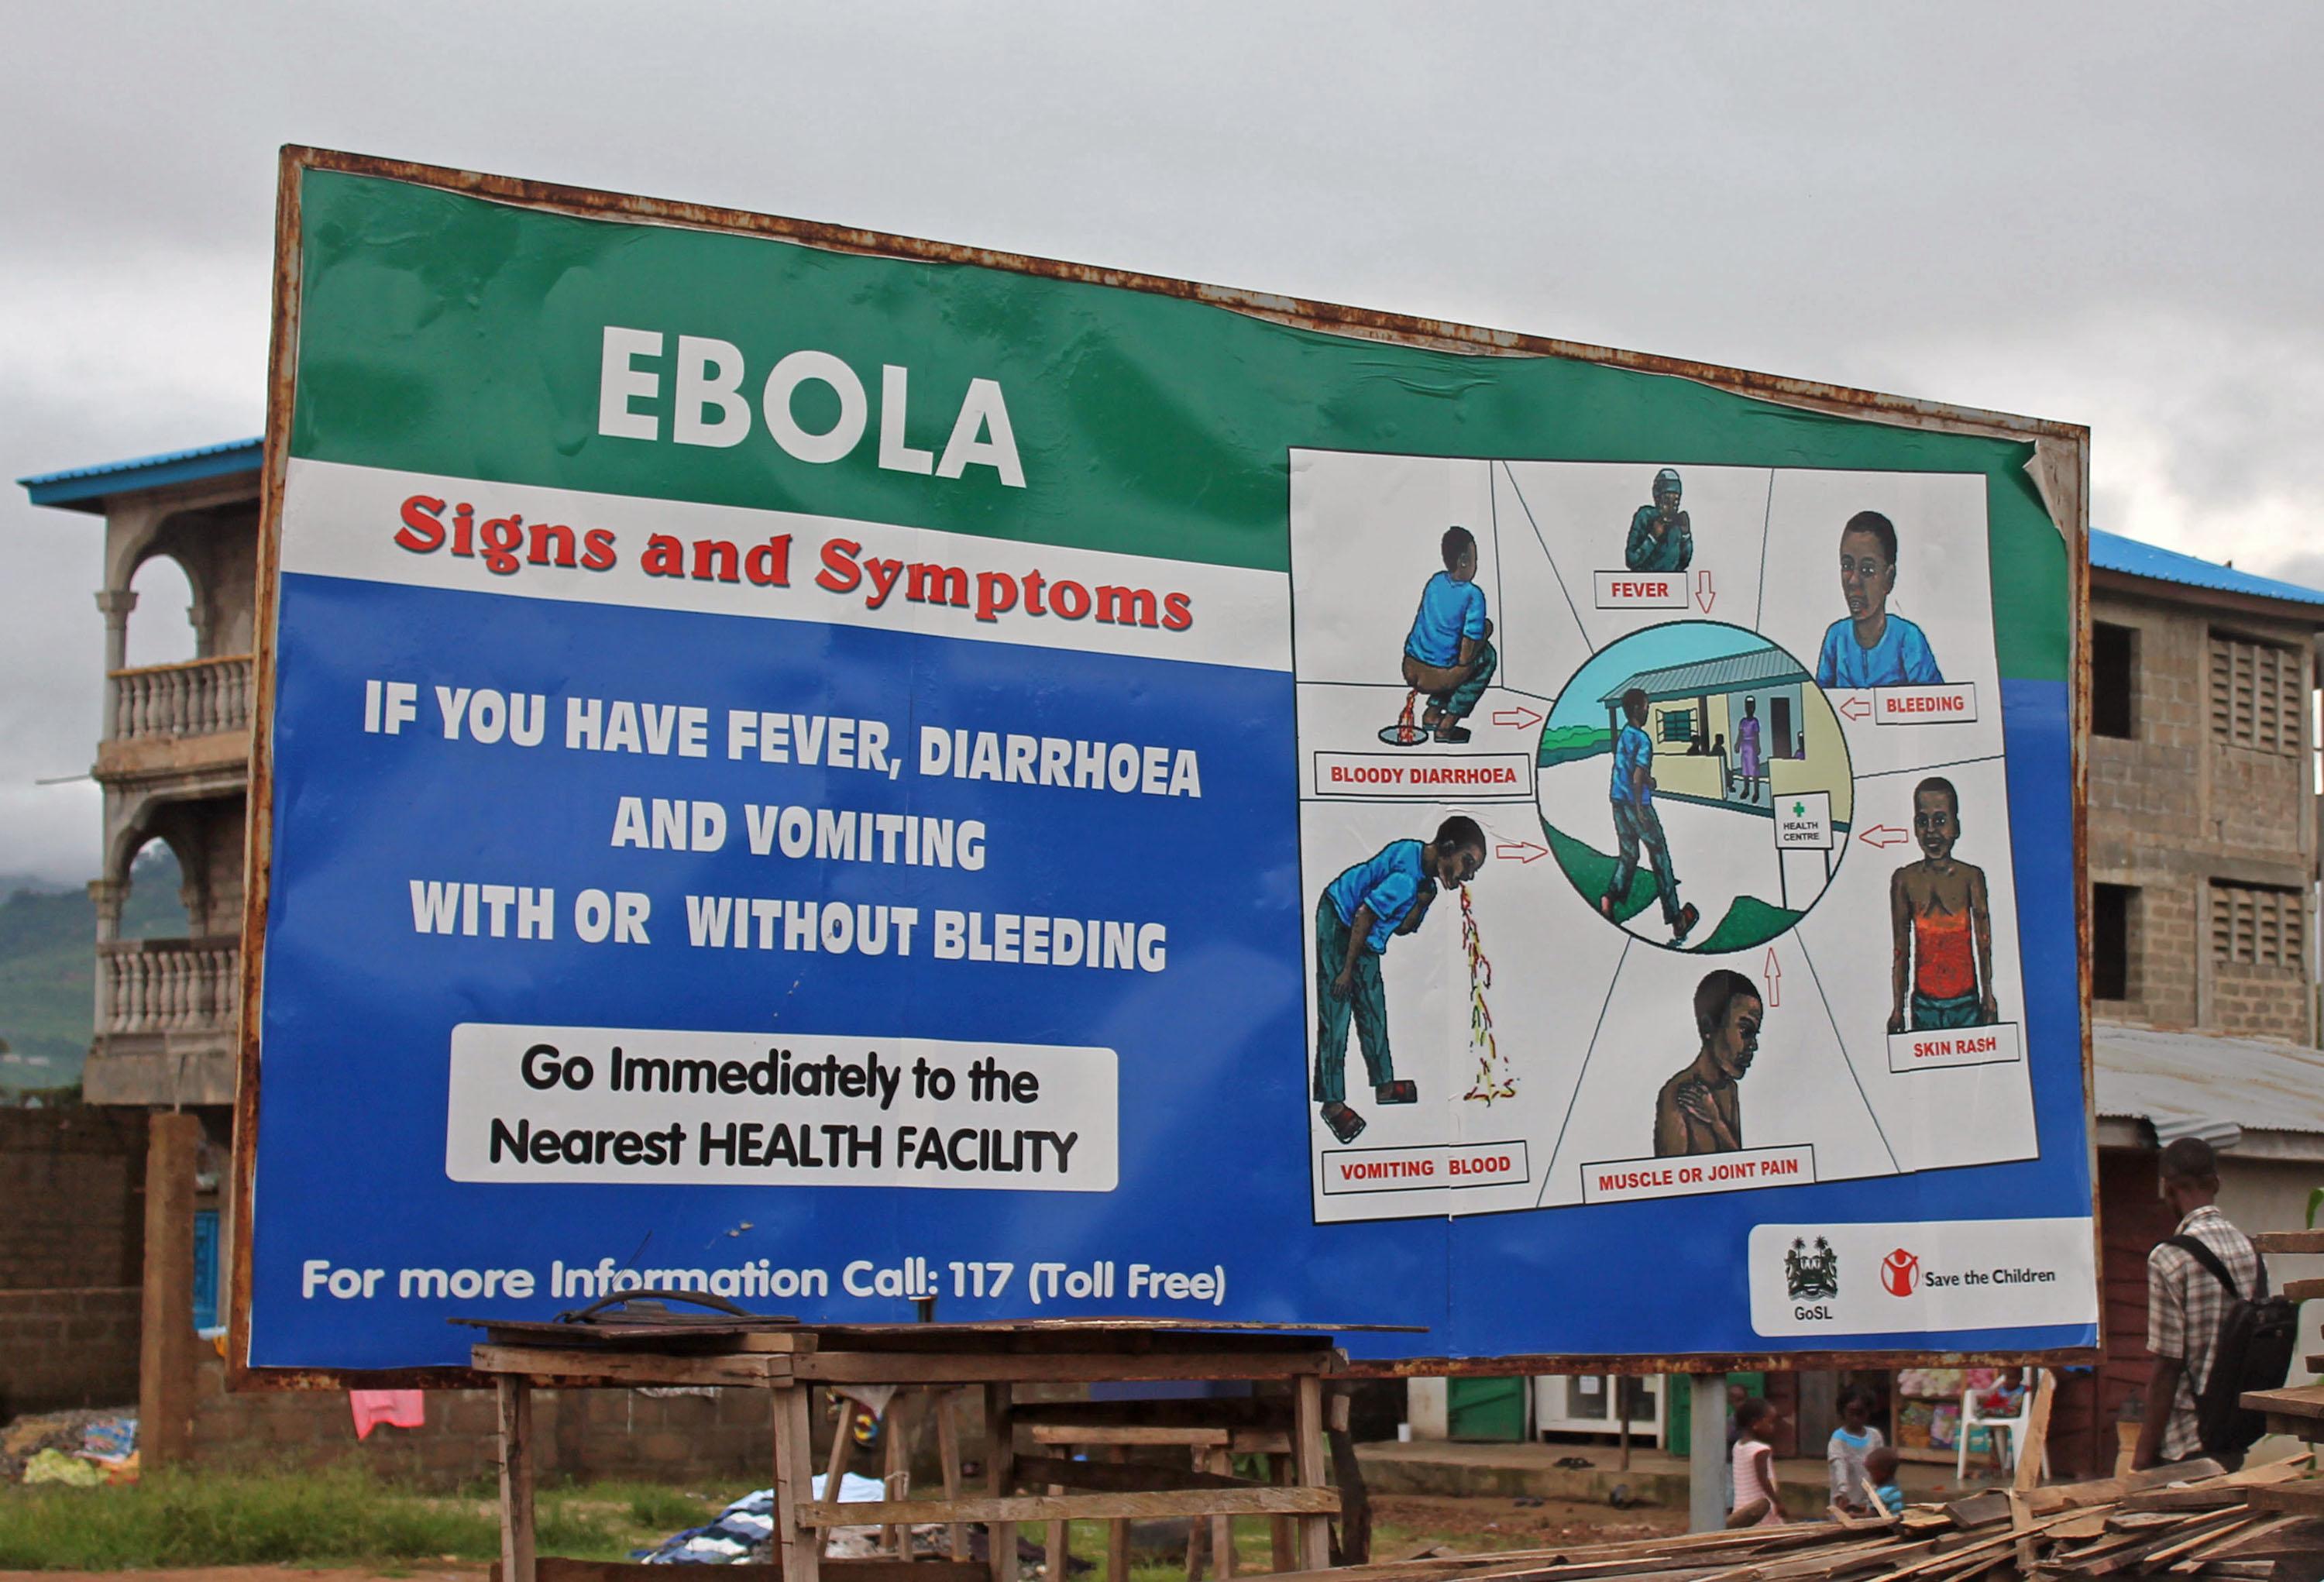 Ebola rallenta ma la paura è ancora grande: picchiati a sangue tre preti in Guinea